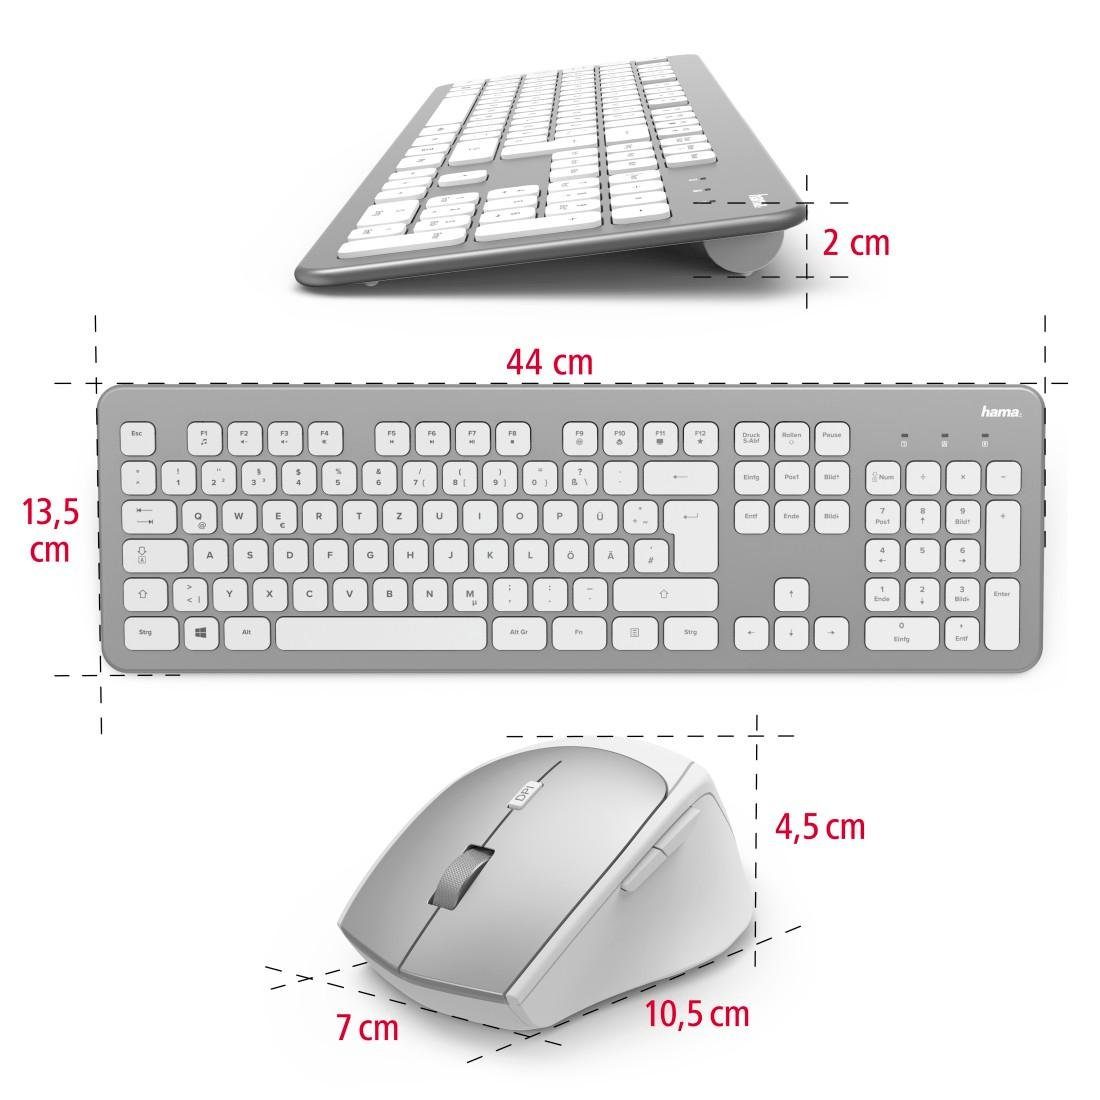 Funktastatur-/Maus-Set Maus-Set und Tastatur- Hama "KMW-700" weiß Tastatur/Maus-Set